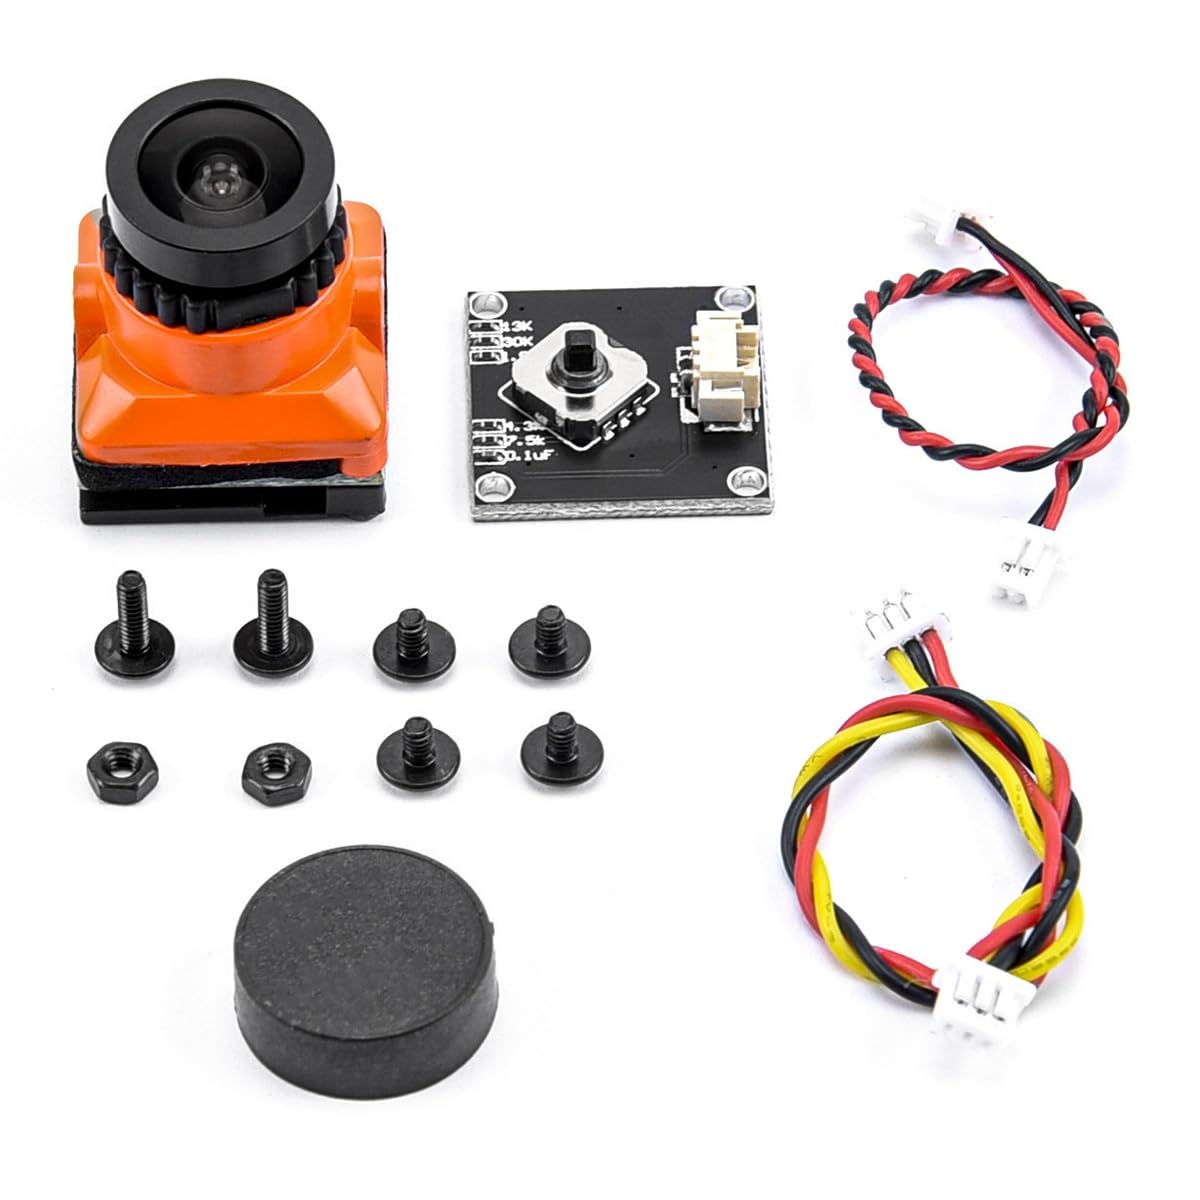 Qtynudy FPV-Kamera HD 1500TVL 2,1 mm Weitwinkel mit OSD-Anpassungsplatine für FPV RC Racing Drone Zubehör,Orange